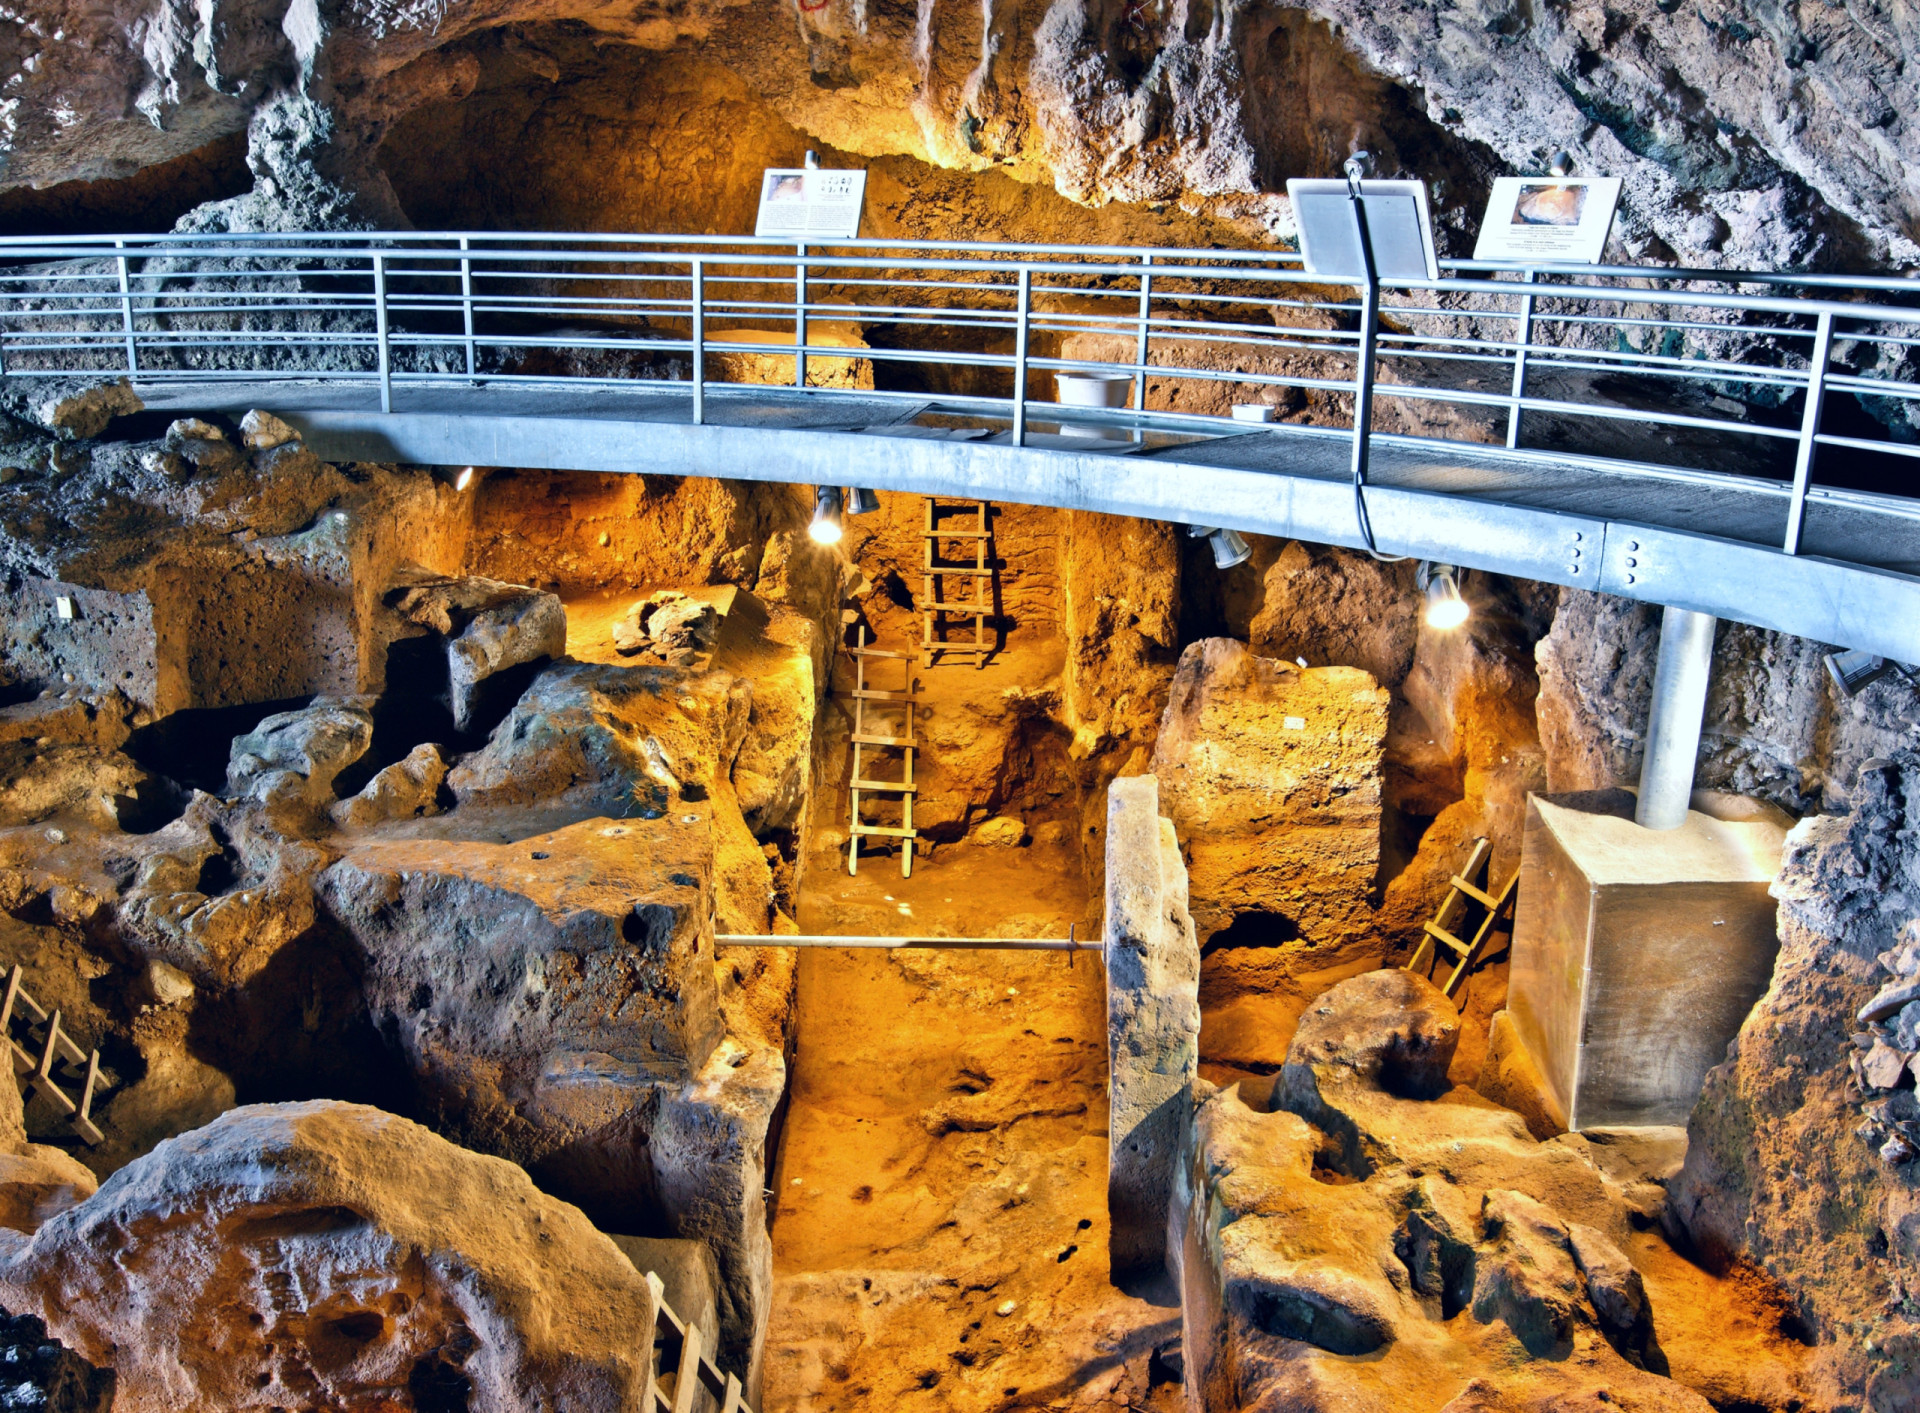 <p>Les ruines les plus anciennes sont celles que l'on trouve dans la grotte de Theopetra, en Grèce, en particulier le mur de pierre situé à l'entrée de la caverne de calcaire. Estimé à environ 21 000 ans avant notre ère, il s'agit du plus ancien exemple connu de structure construite par l'homme. On pense qu'il a servi de brise-vent aux habitants de la grotte pendant la dernière période glaciaire.</p><p><a href="https://www.msn.com/fr-fr/community/channel/vid-7xx8mnucu55yw63we9va2gwr7uihbxwc68fxqp25x6tg4ftibpra?cvid=94631541bc0f4f89bfd59158d696ad7e">Suivez-nous et accédez tous les jours à du contenu exclusif</a></p>